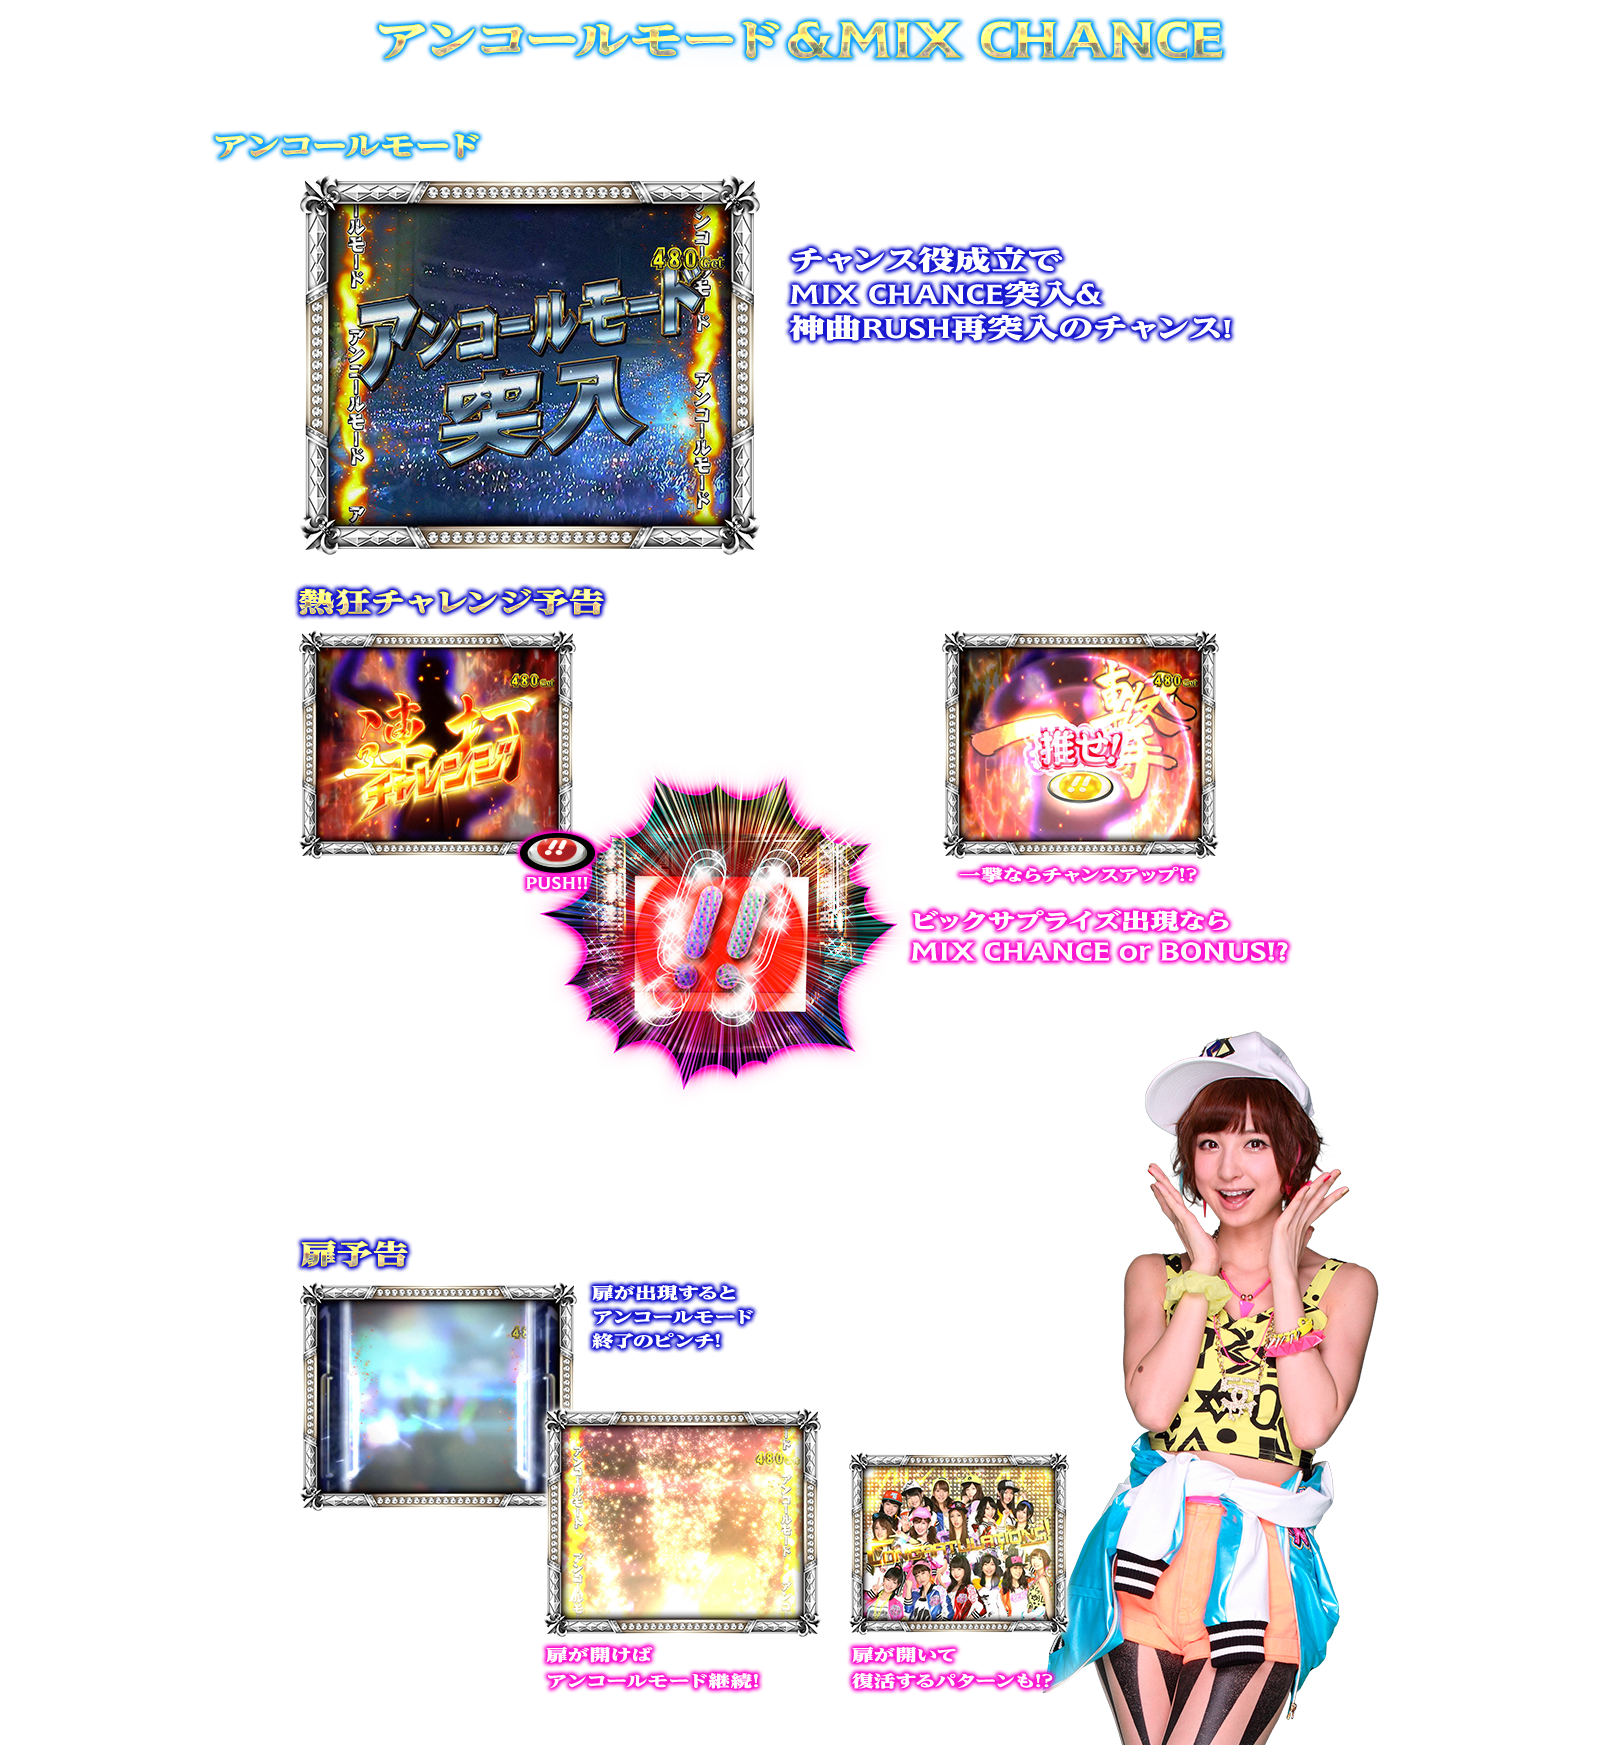 ぱちスロAKB48 バラの儀式の演出紹介。神曲RUSHのアンコールモード&MIX CHANCEです。AKB48ファン、スロット初心者、ヘビーユーザーまで誰もが楽しめるDDスペックで登場!!